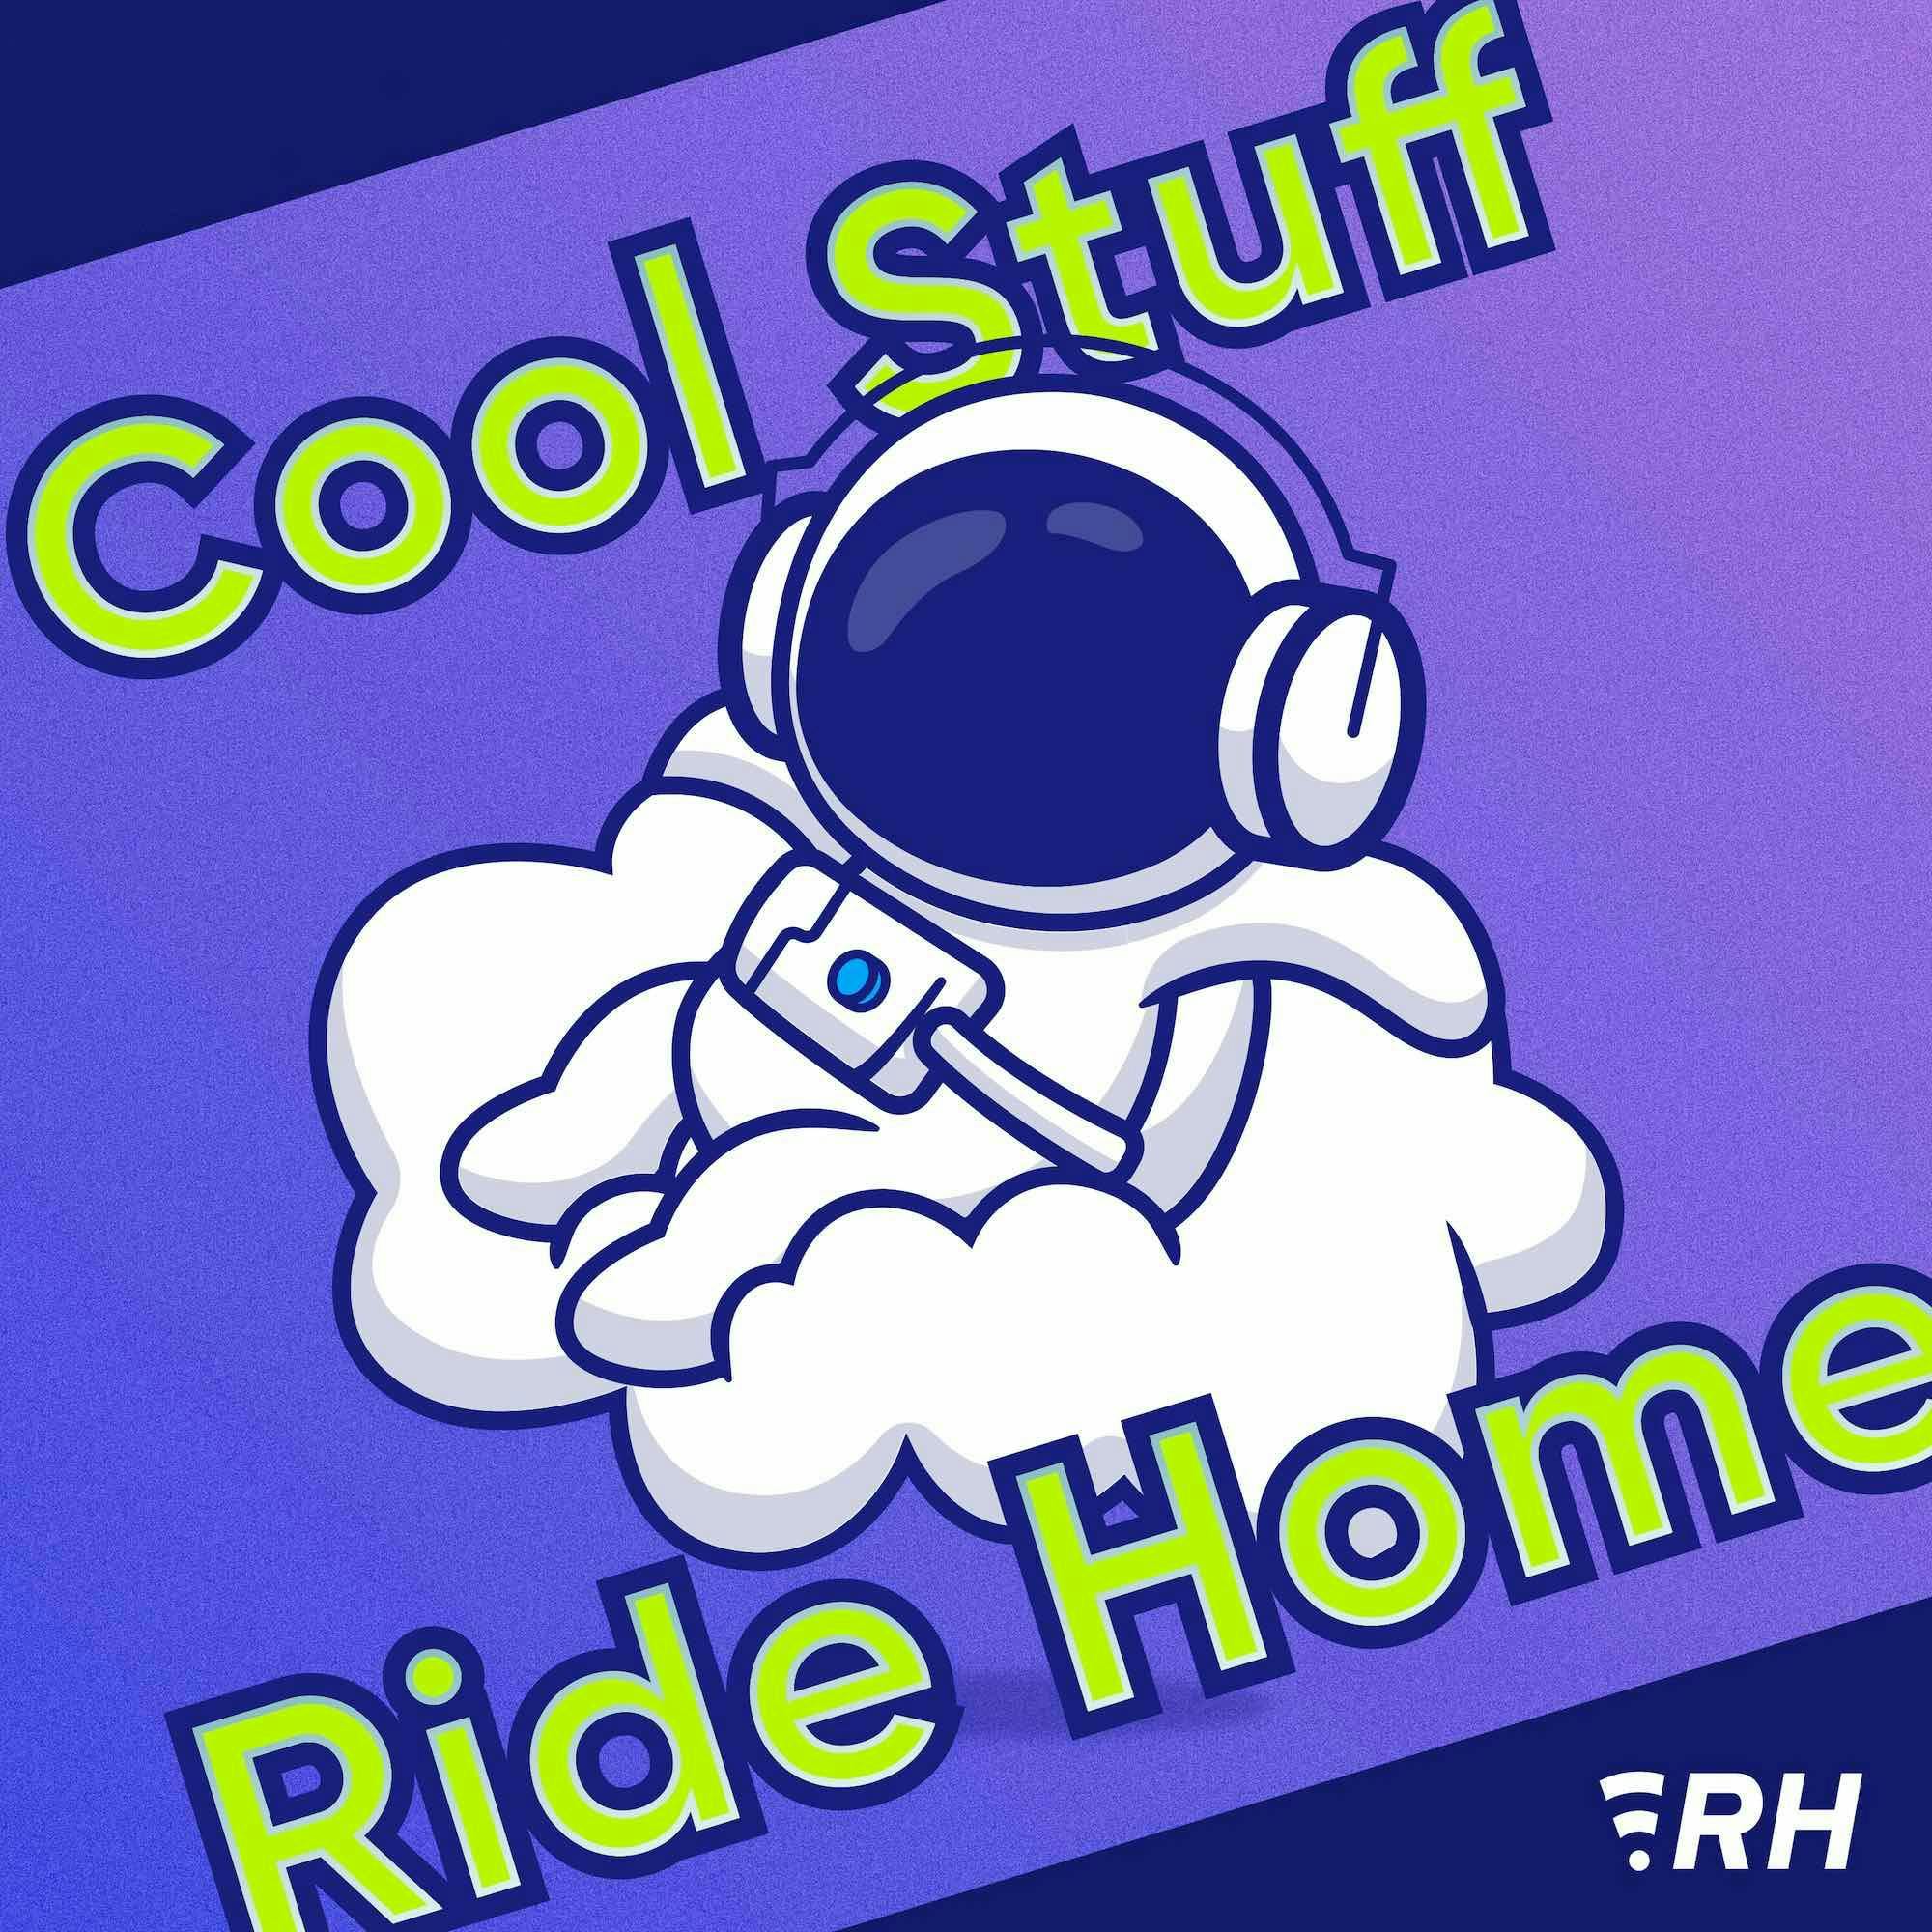 Ride Home Fund